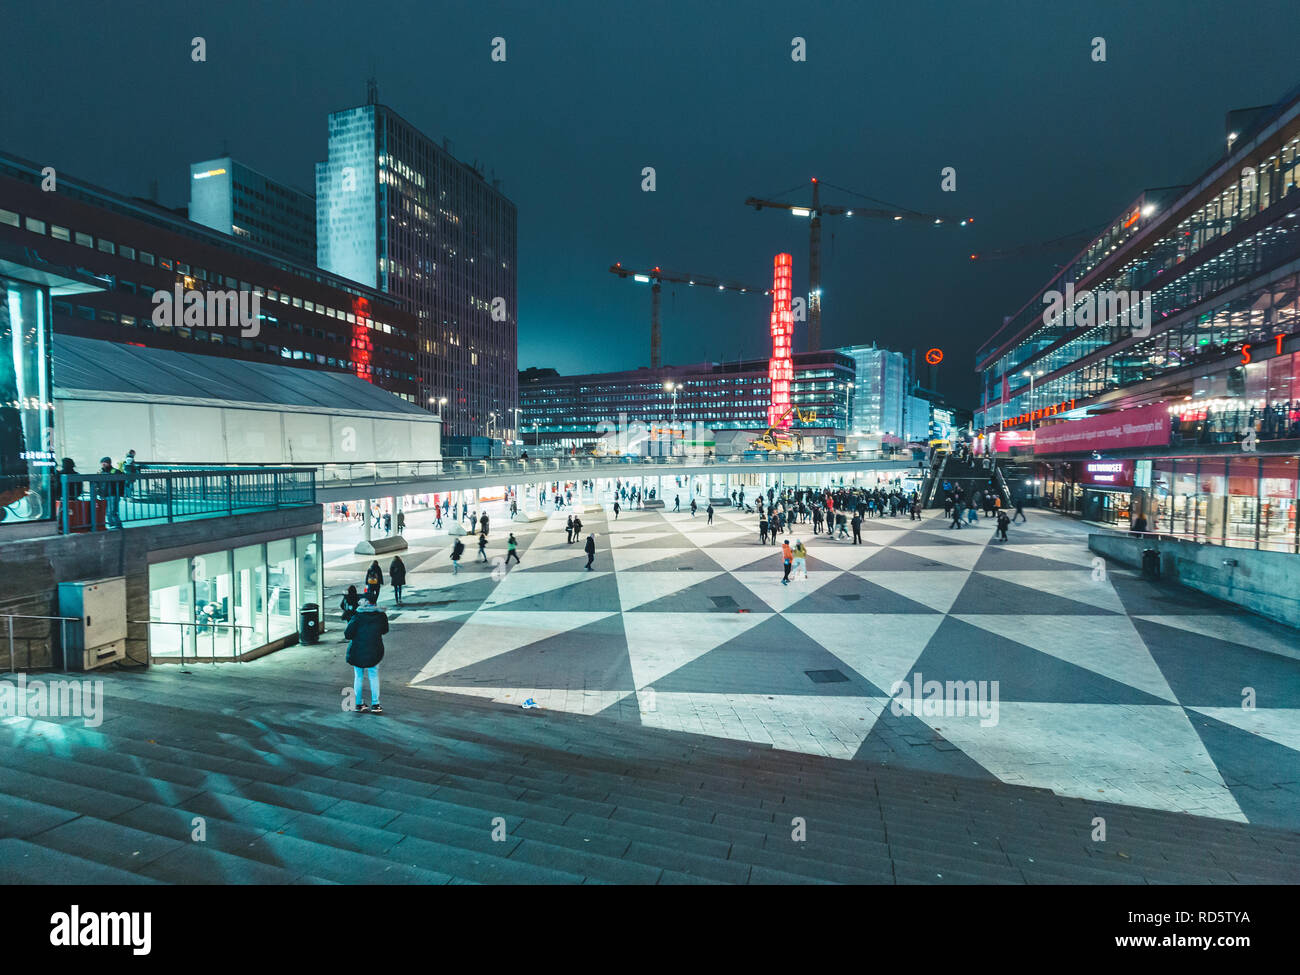 STOCKHOLM, Suède - 11 NOVEMBRE 2017 : vue panoramique de la place Sergels Torg célèbre la nuit, le centre de Stockholm, Suède, Scandinavie Banque D'Images